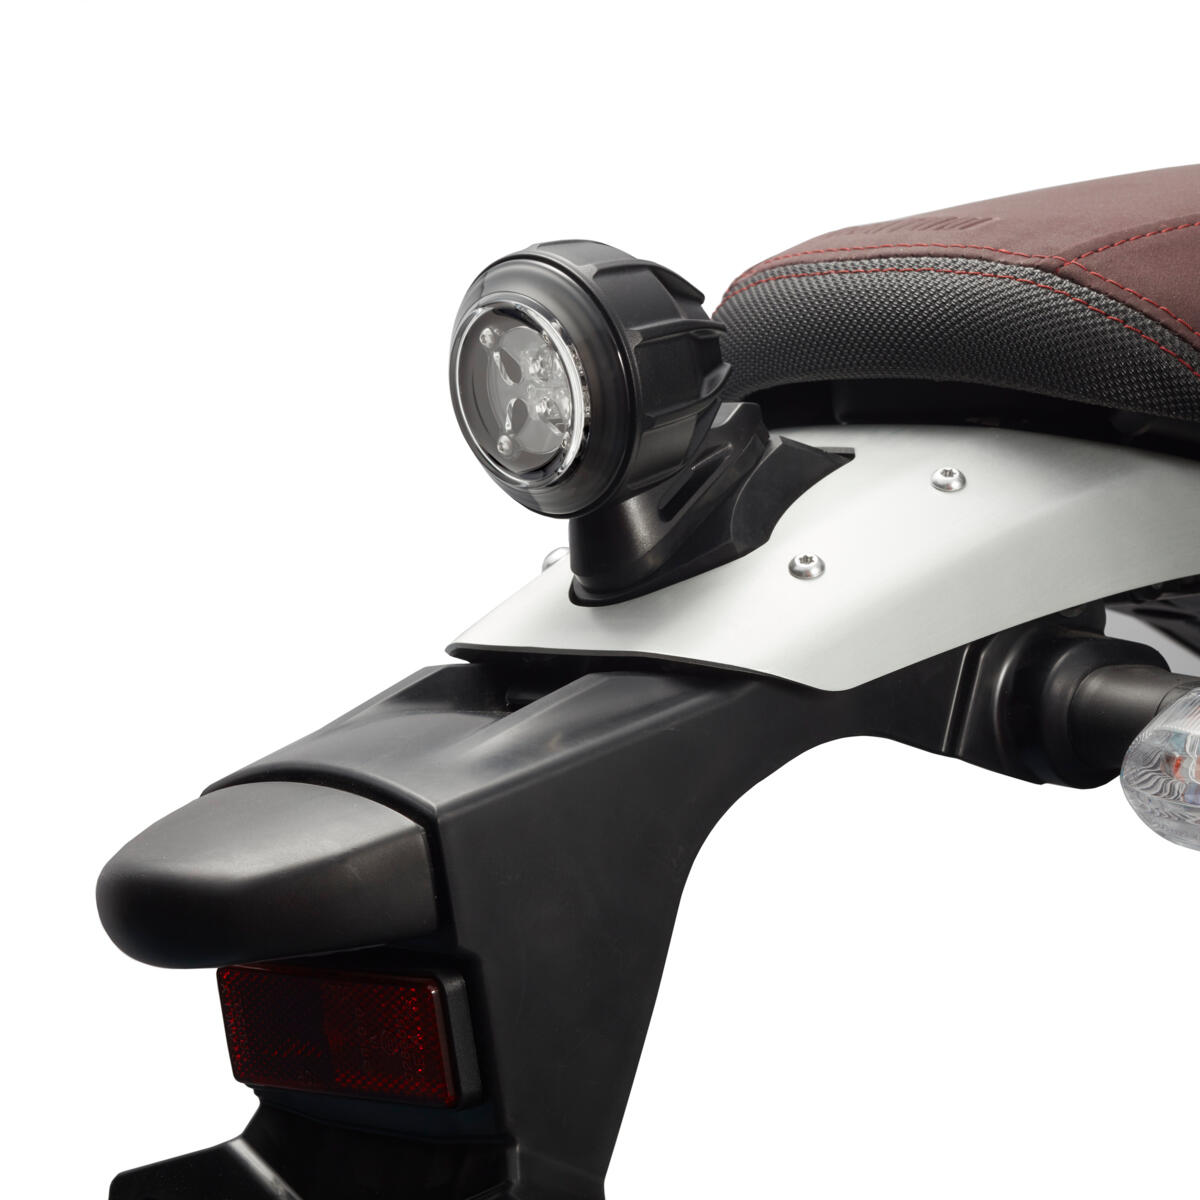 Zadní světlo LED dodá vašemu motocyklu moderní nádech a současně zachová jeho autentický vzhled.